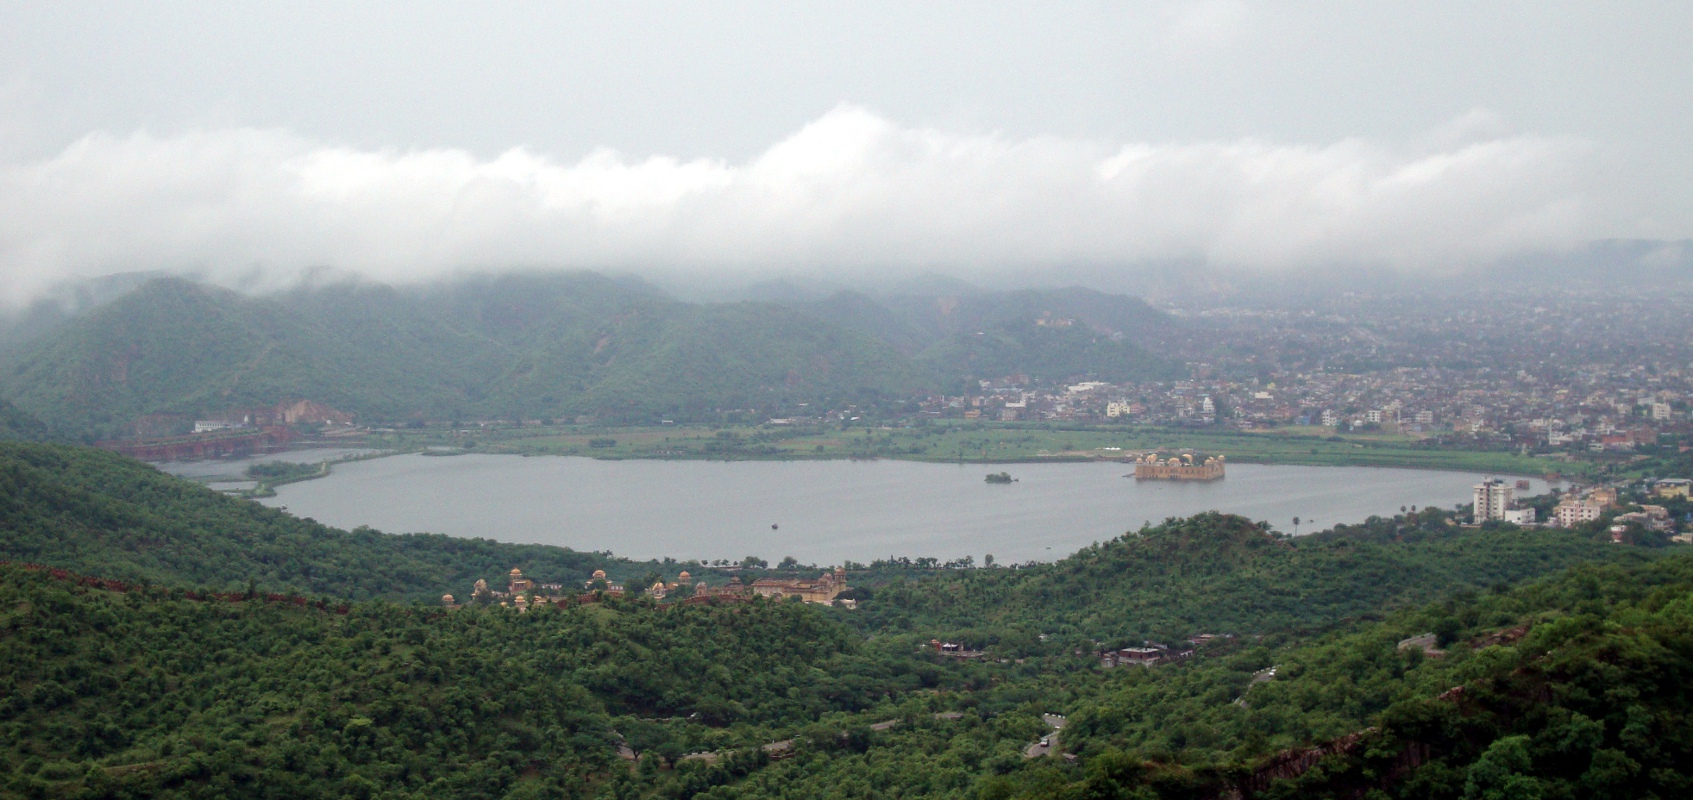 Hilltop view of Jal Mahal Sagar.